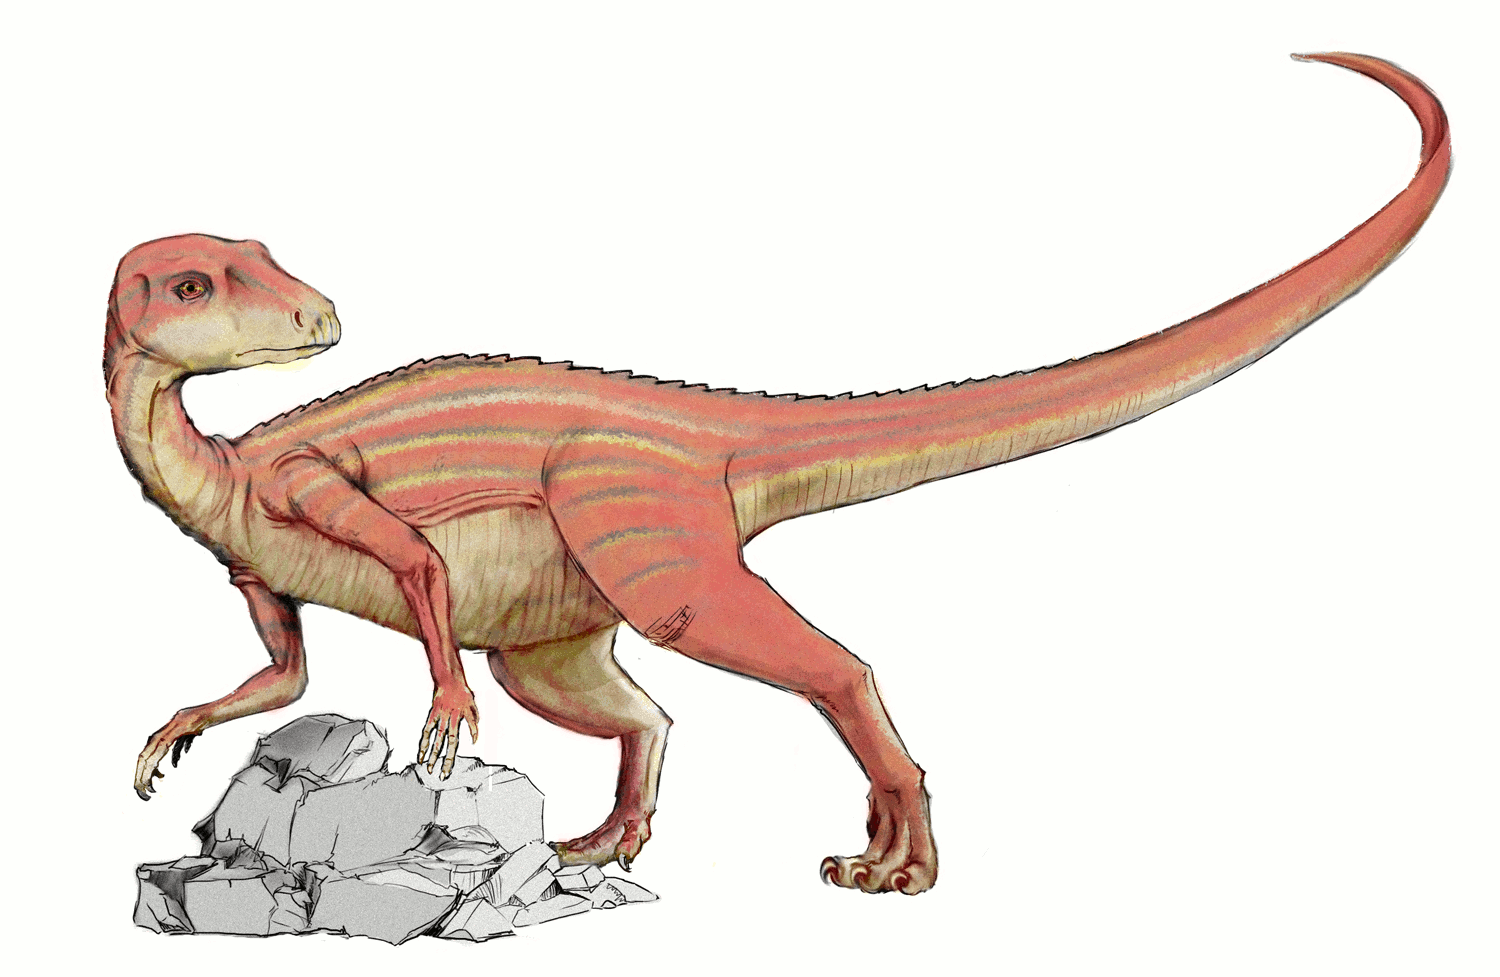 Abrictosaurus dinosaur